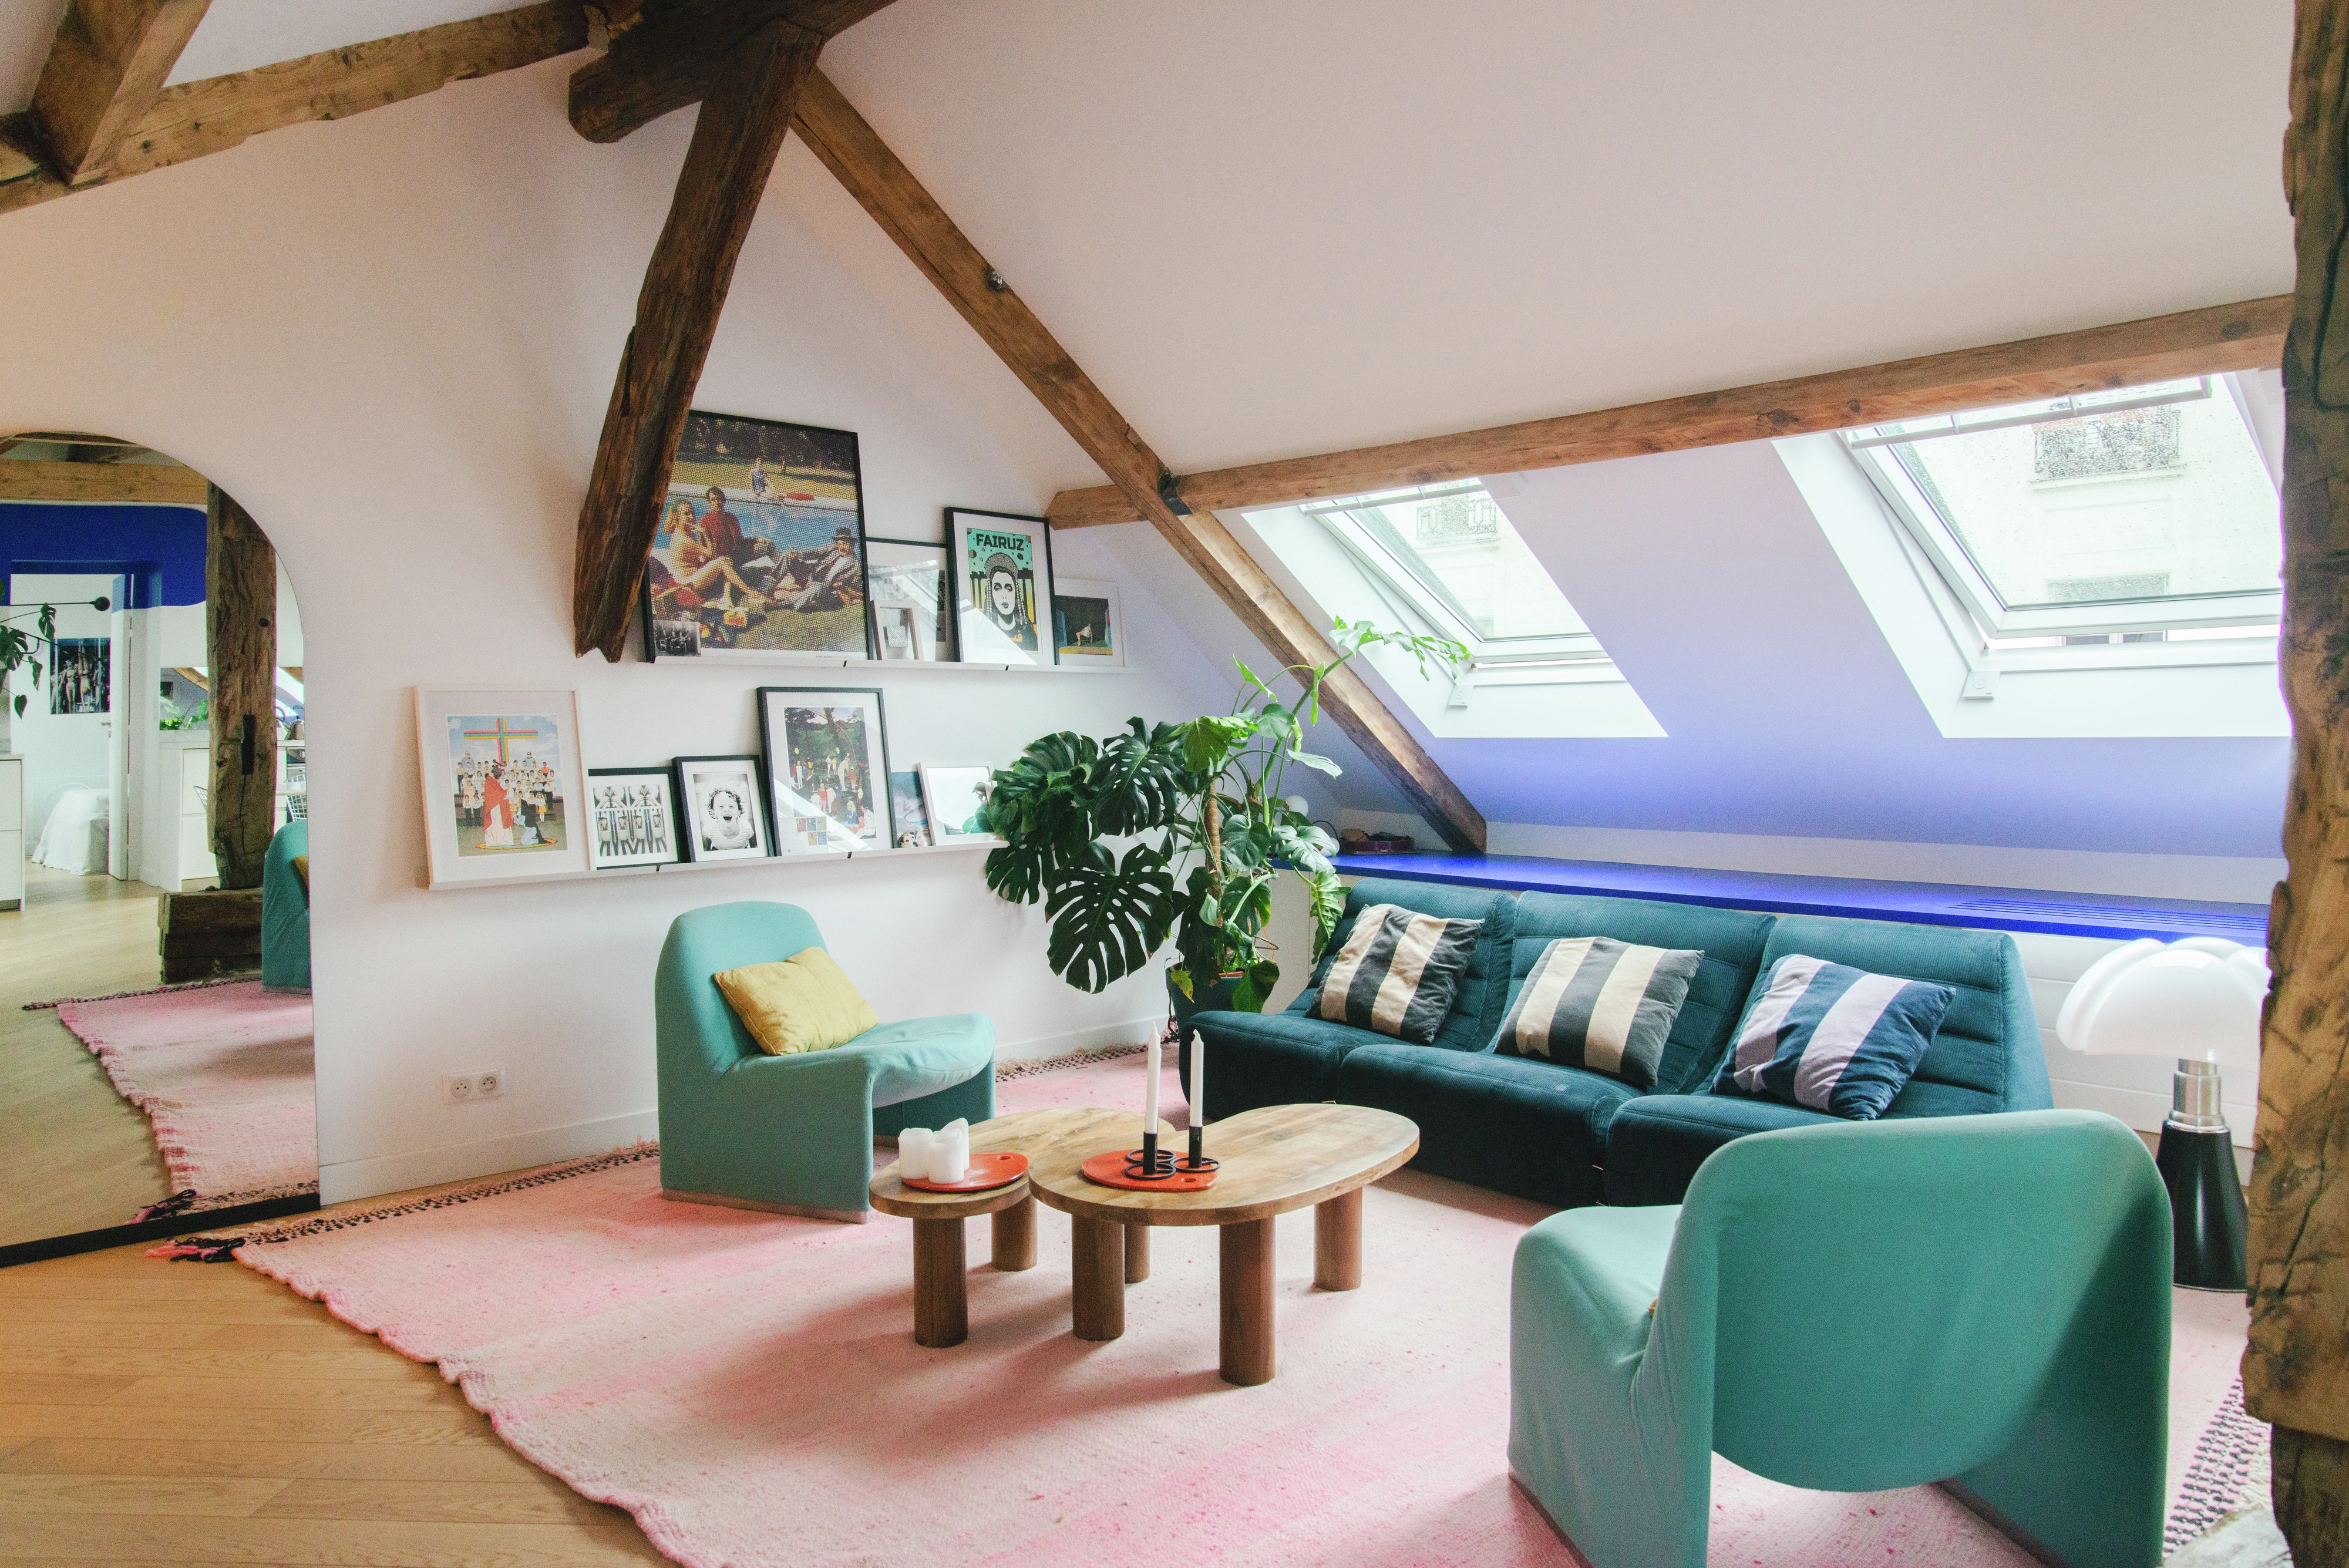 Une pièce mansardée avec deux fenêtres de toit Velux. Meublée d’un canapé bleu, deux fauteuils verts et une table basse. Décorée de photos encadrées et une plante en pot.